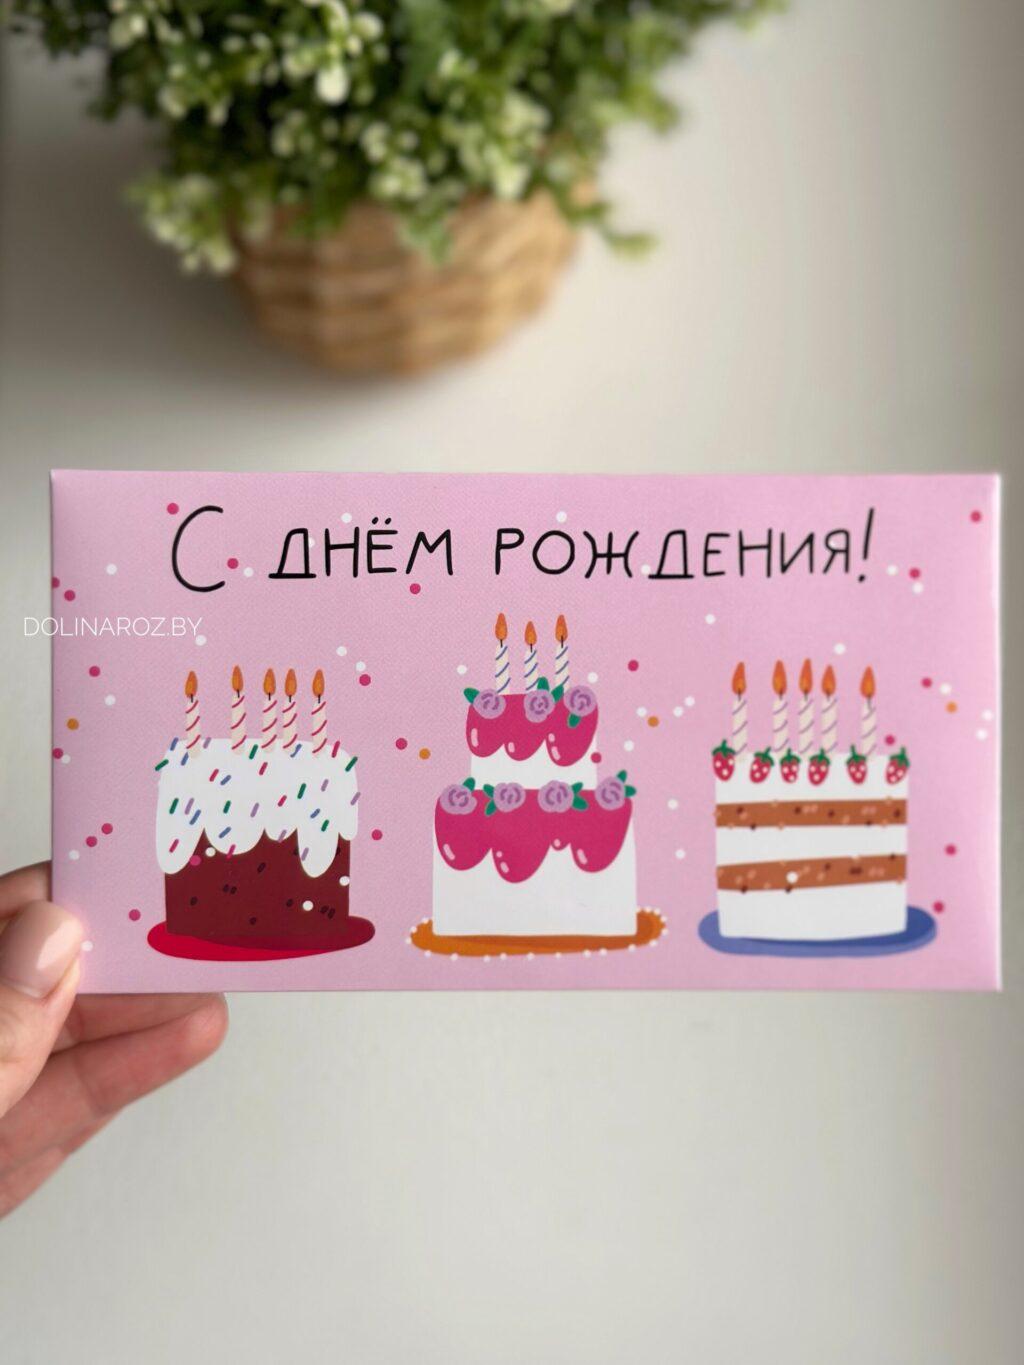 Конверт для денег "С днем рождения! Три торта"